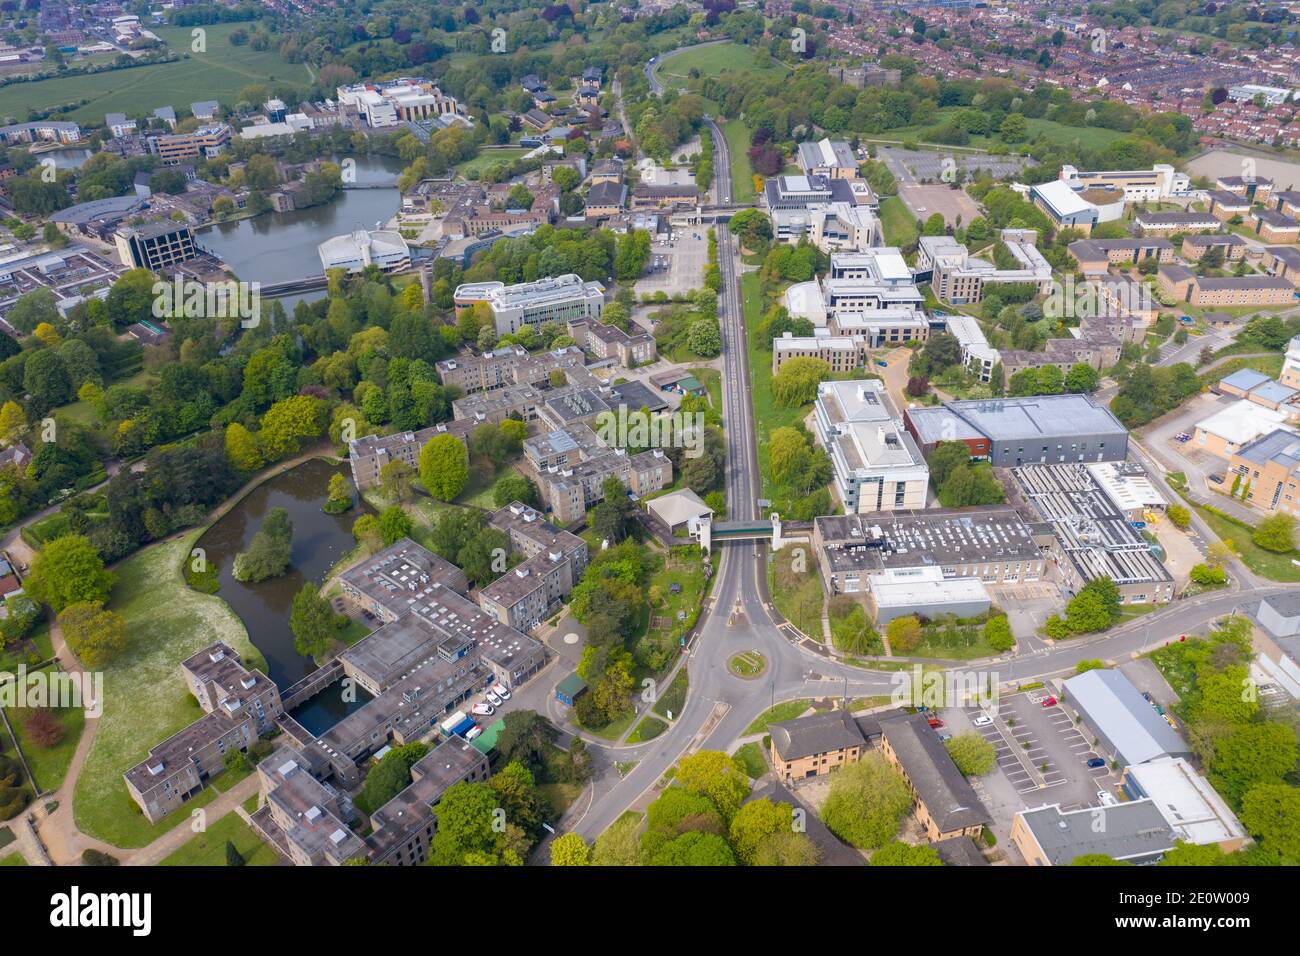 Luftaufnahme der großen Universität von York in der City of York in North Yorkshire, UK Akademische Lehr-und Forschungseinrichtung, gegründet 1963, w Stockfoto